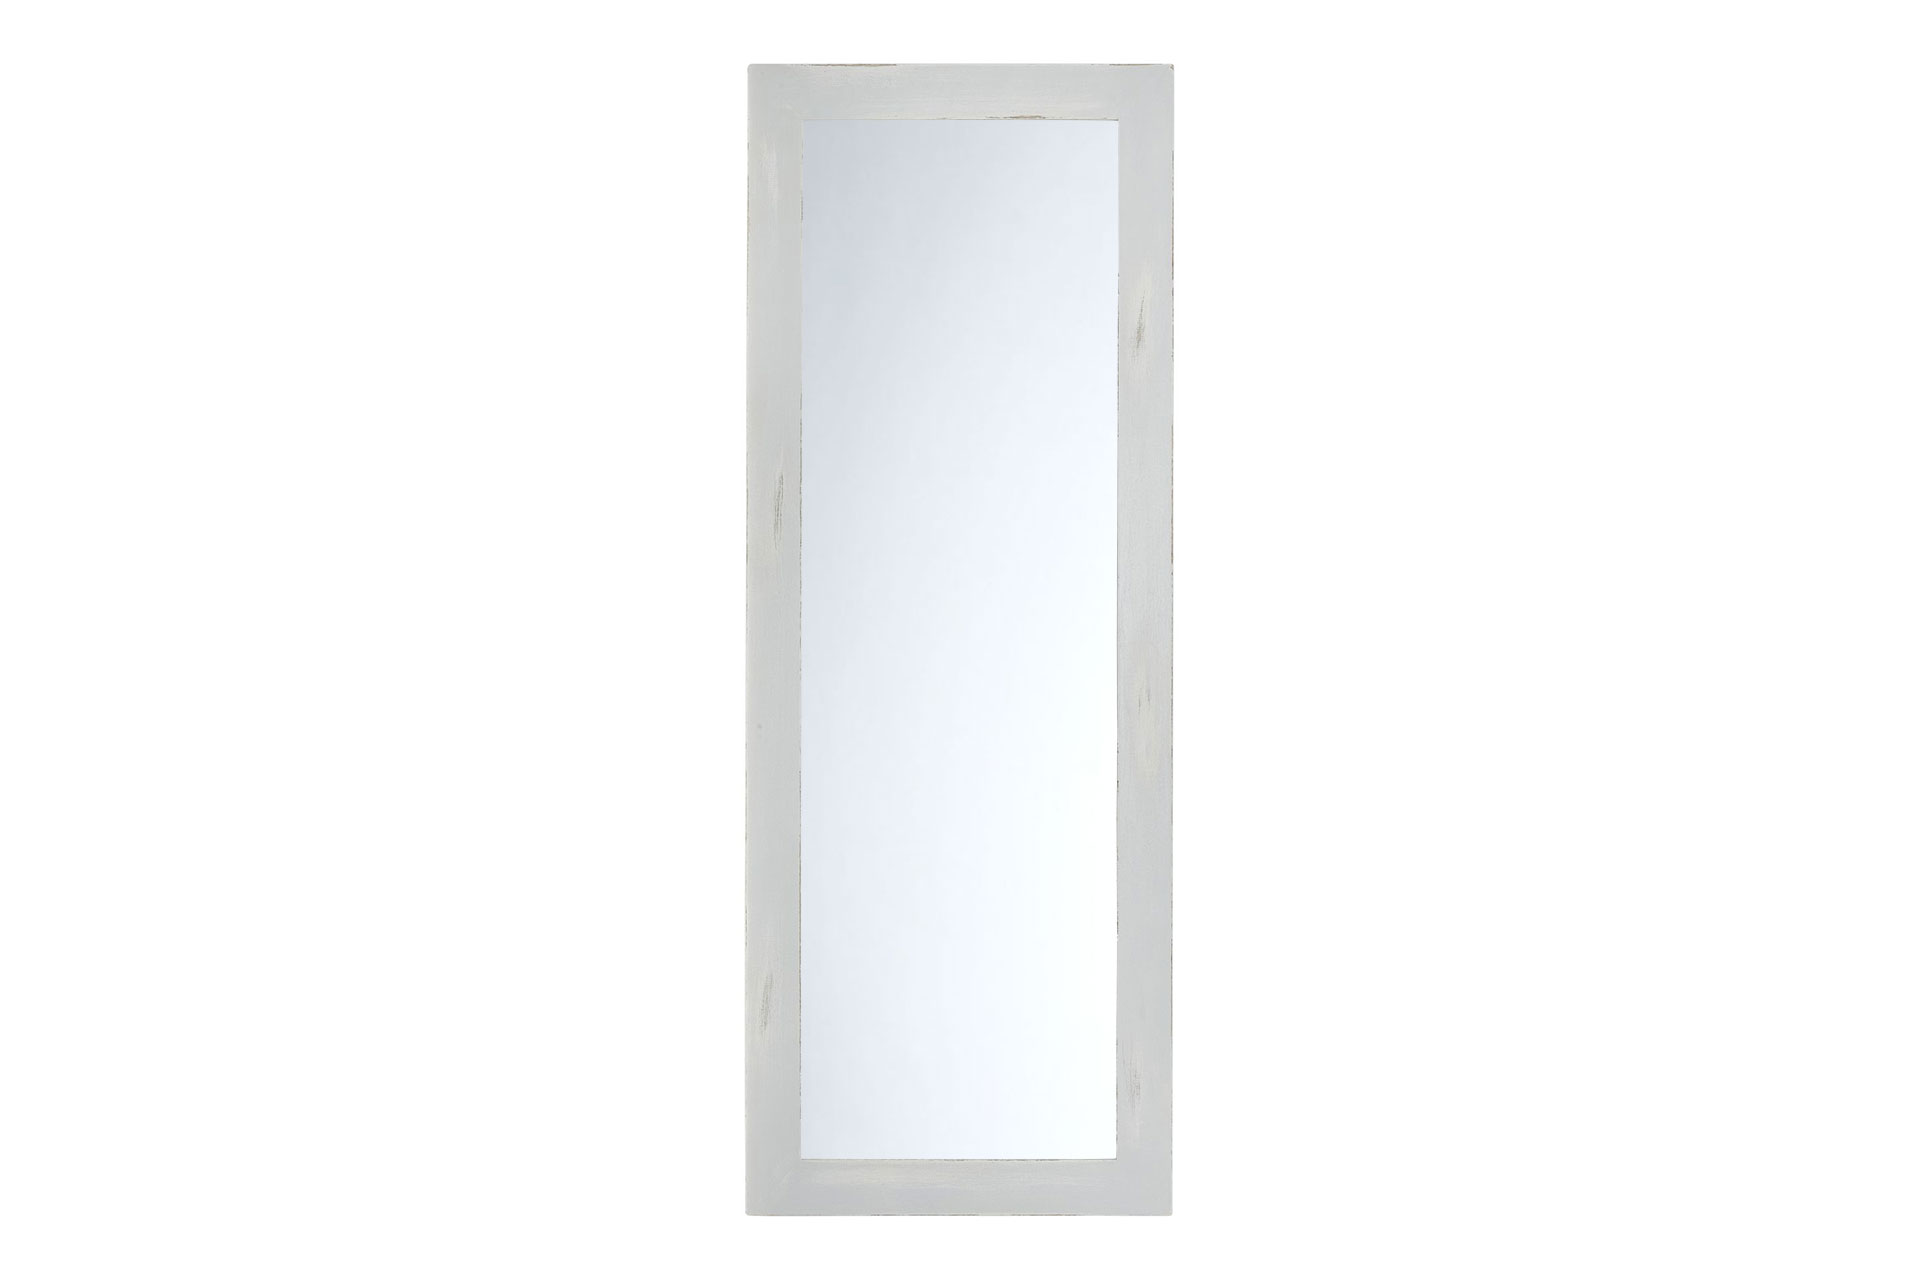 Wandspiegel Modell Moon Grey, Form: rechteckig Spiegel: Facettenspiegel, Shabby-Chic Style, Raum: Flur, Innenbereich, Schlafzimmer, Wohnzimmer, Frontansicht, Rahmen mit Spiegel